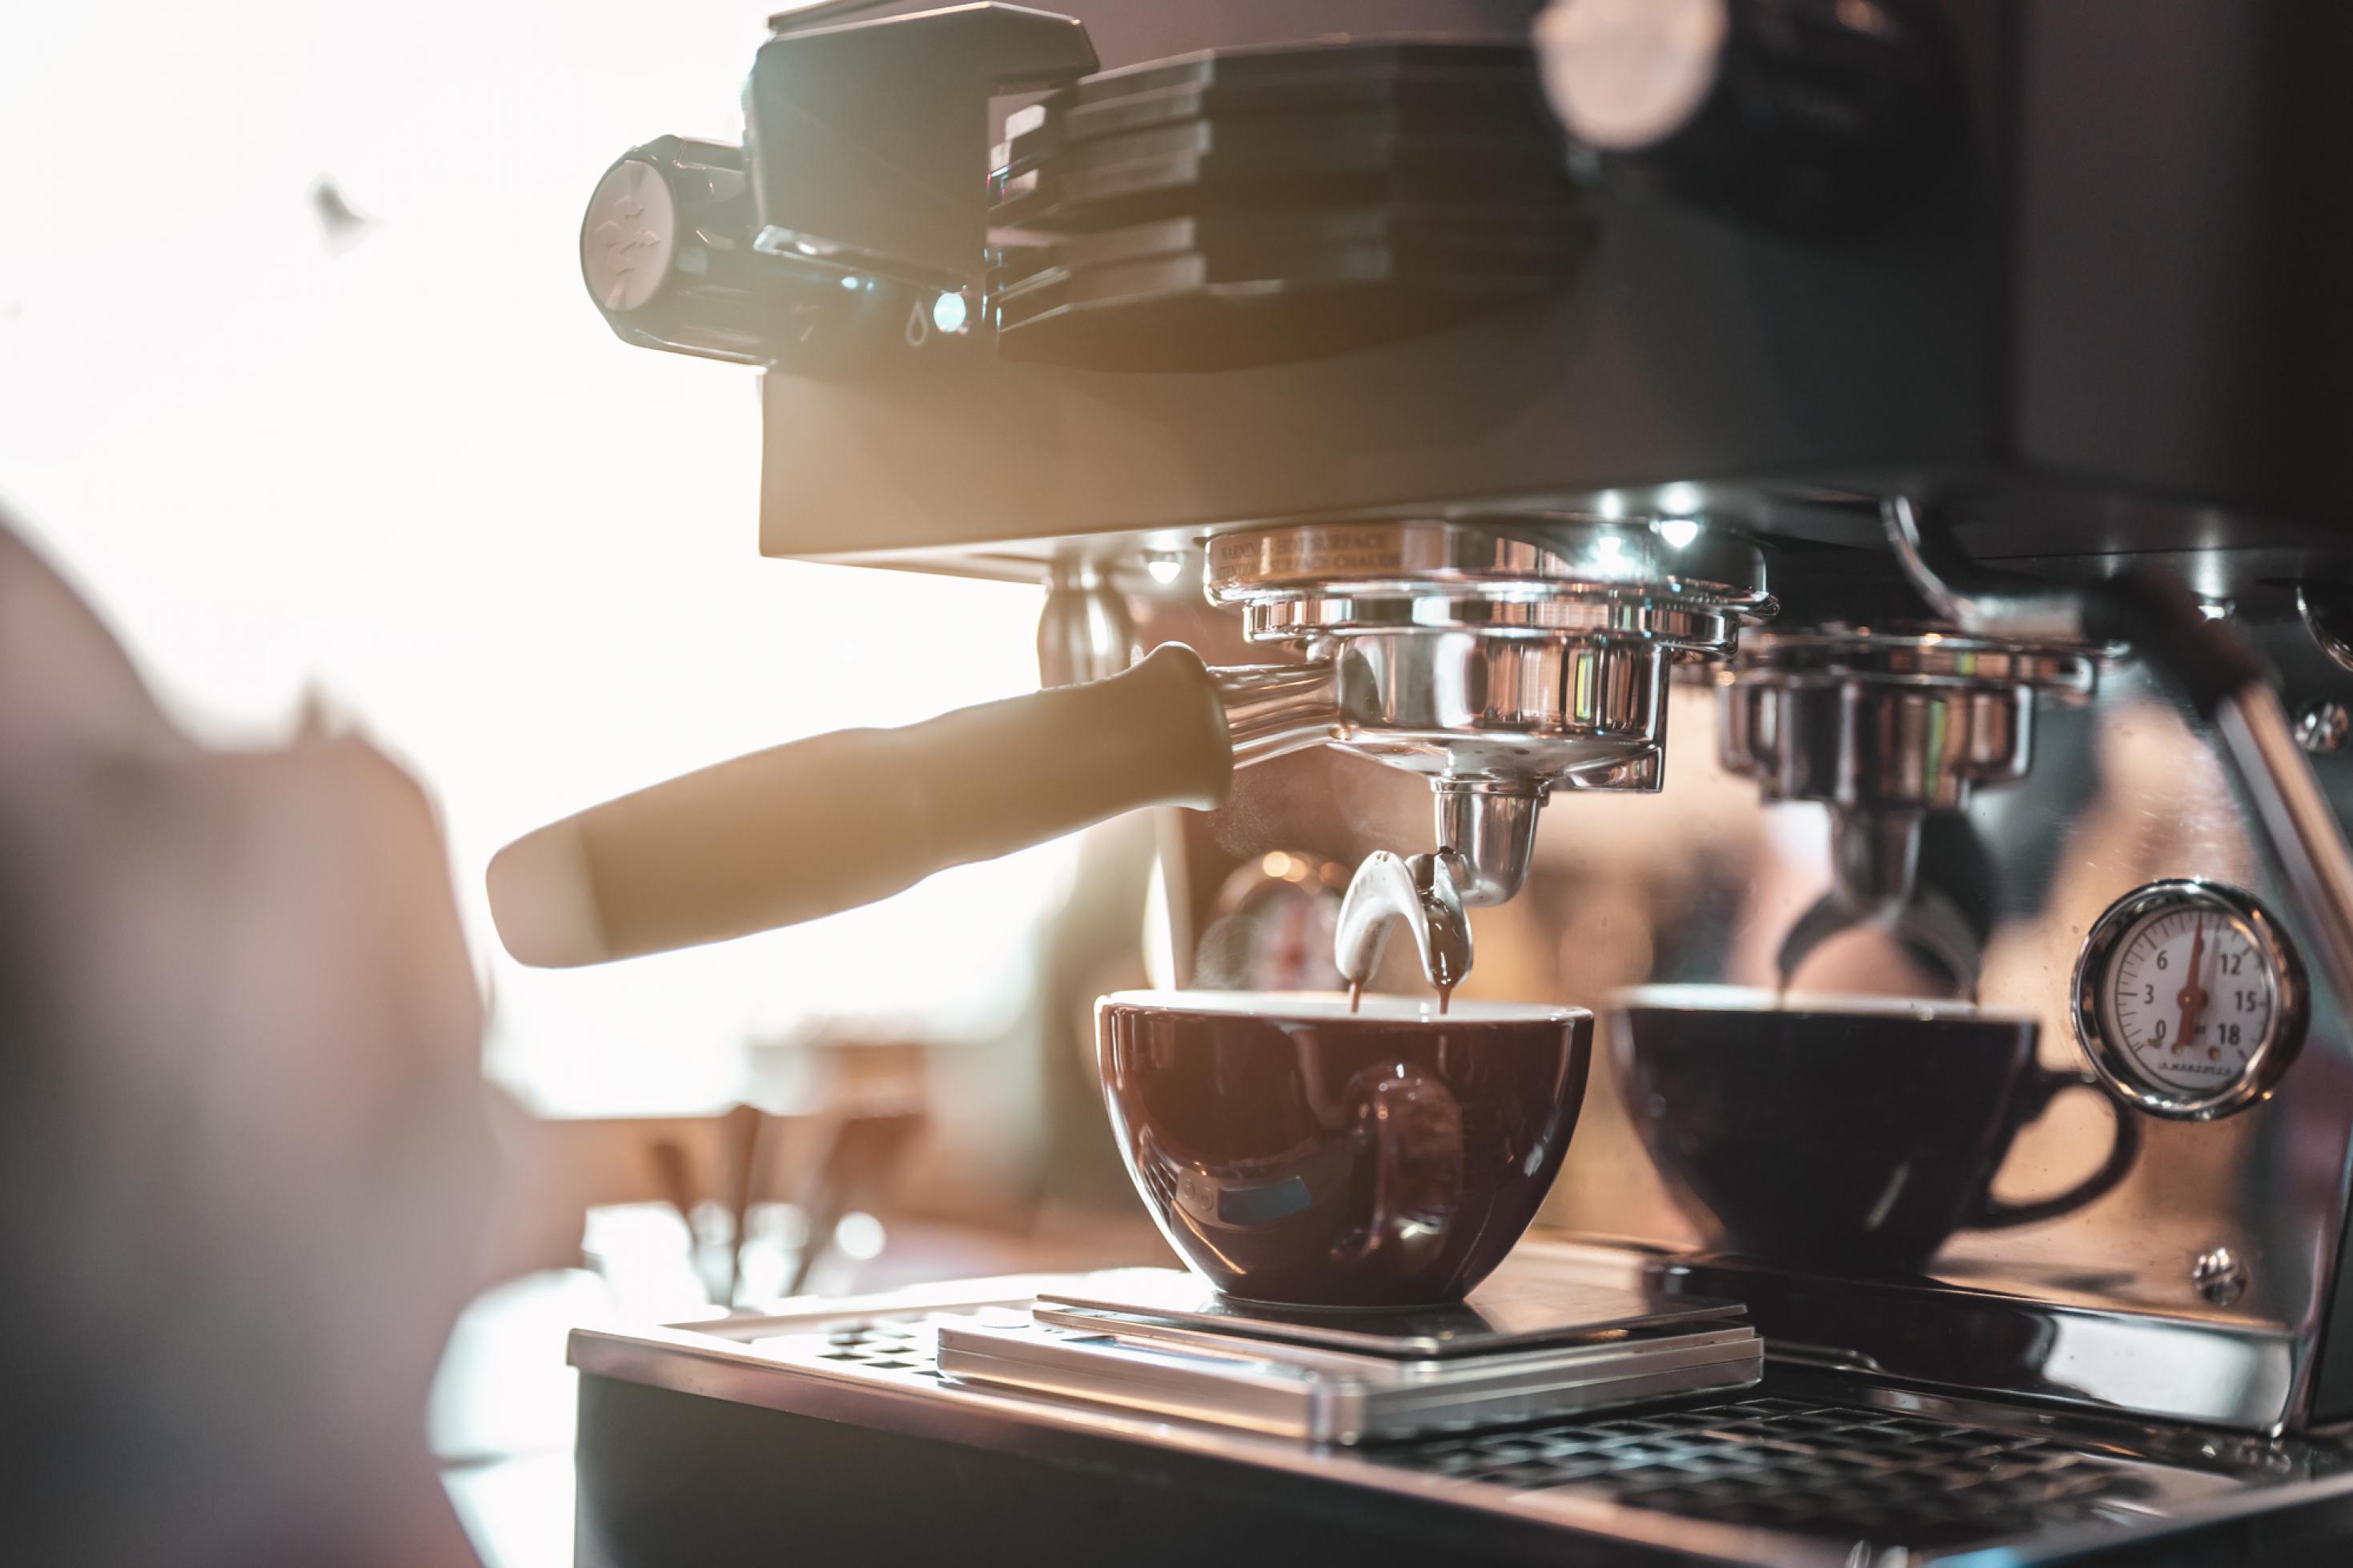 Nahaufnahme einer Kaffeemaschine mit einer Kaffeetasse – fotografiert mit etwas Gegenlicht.